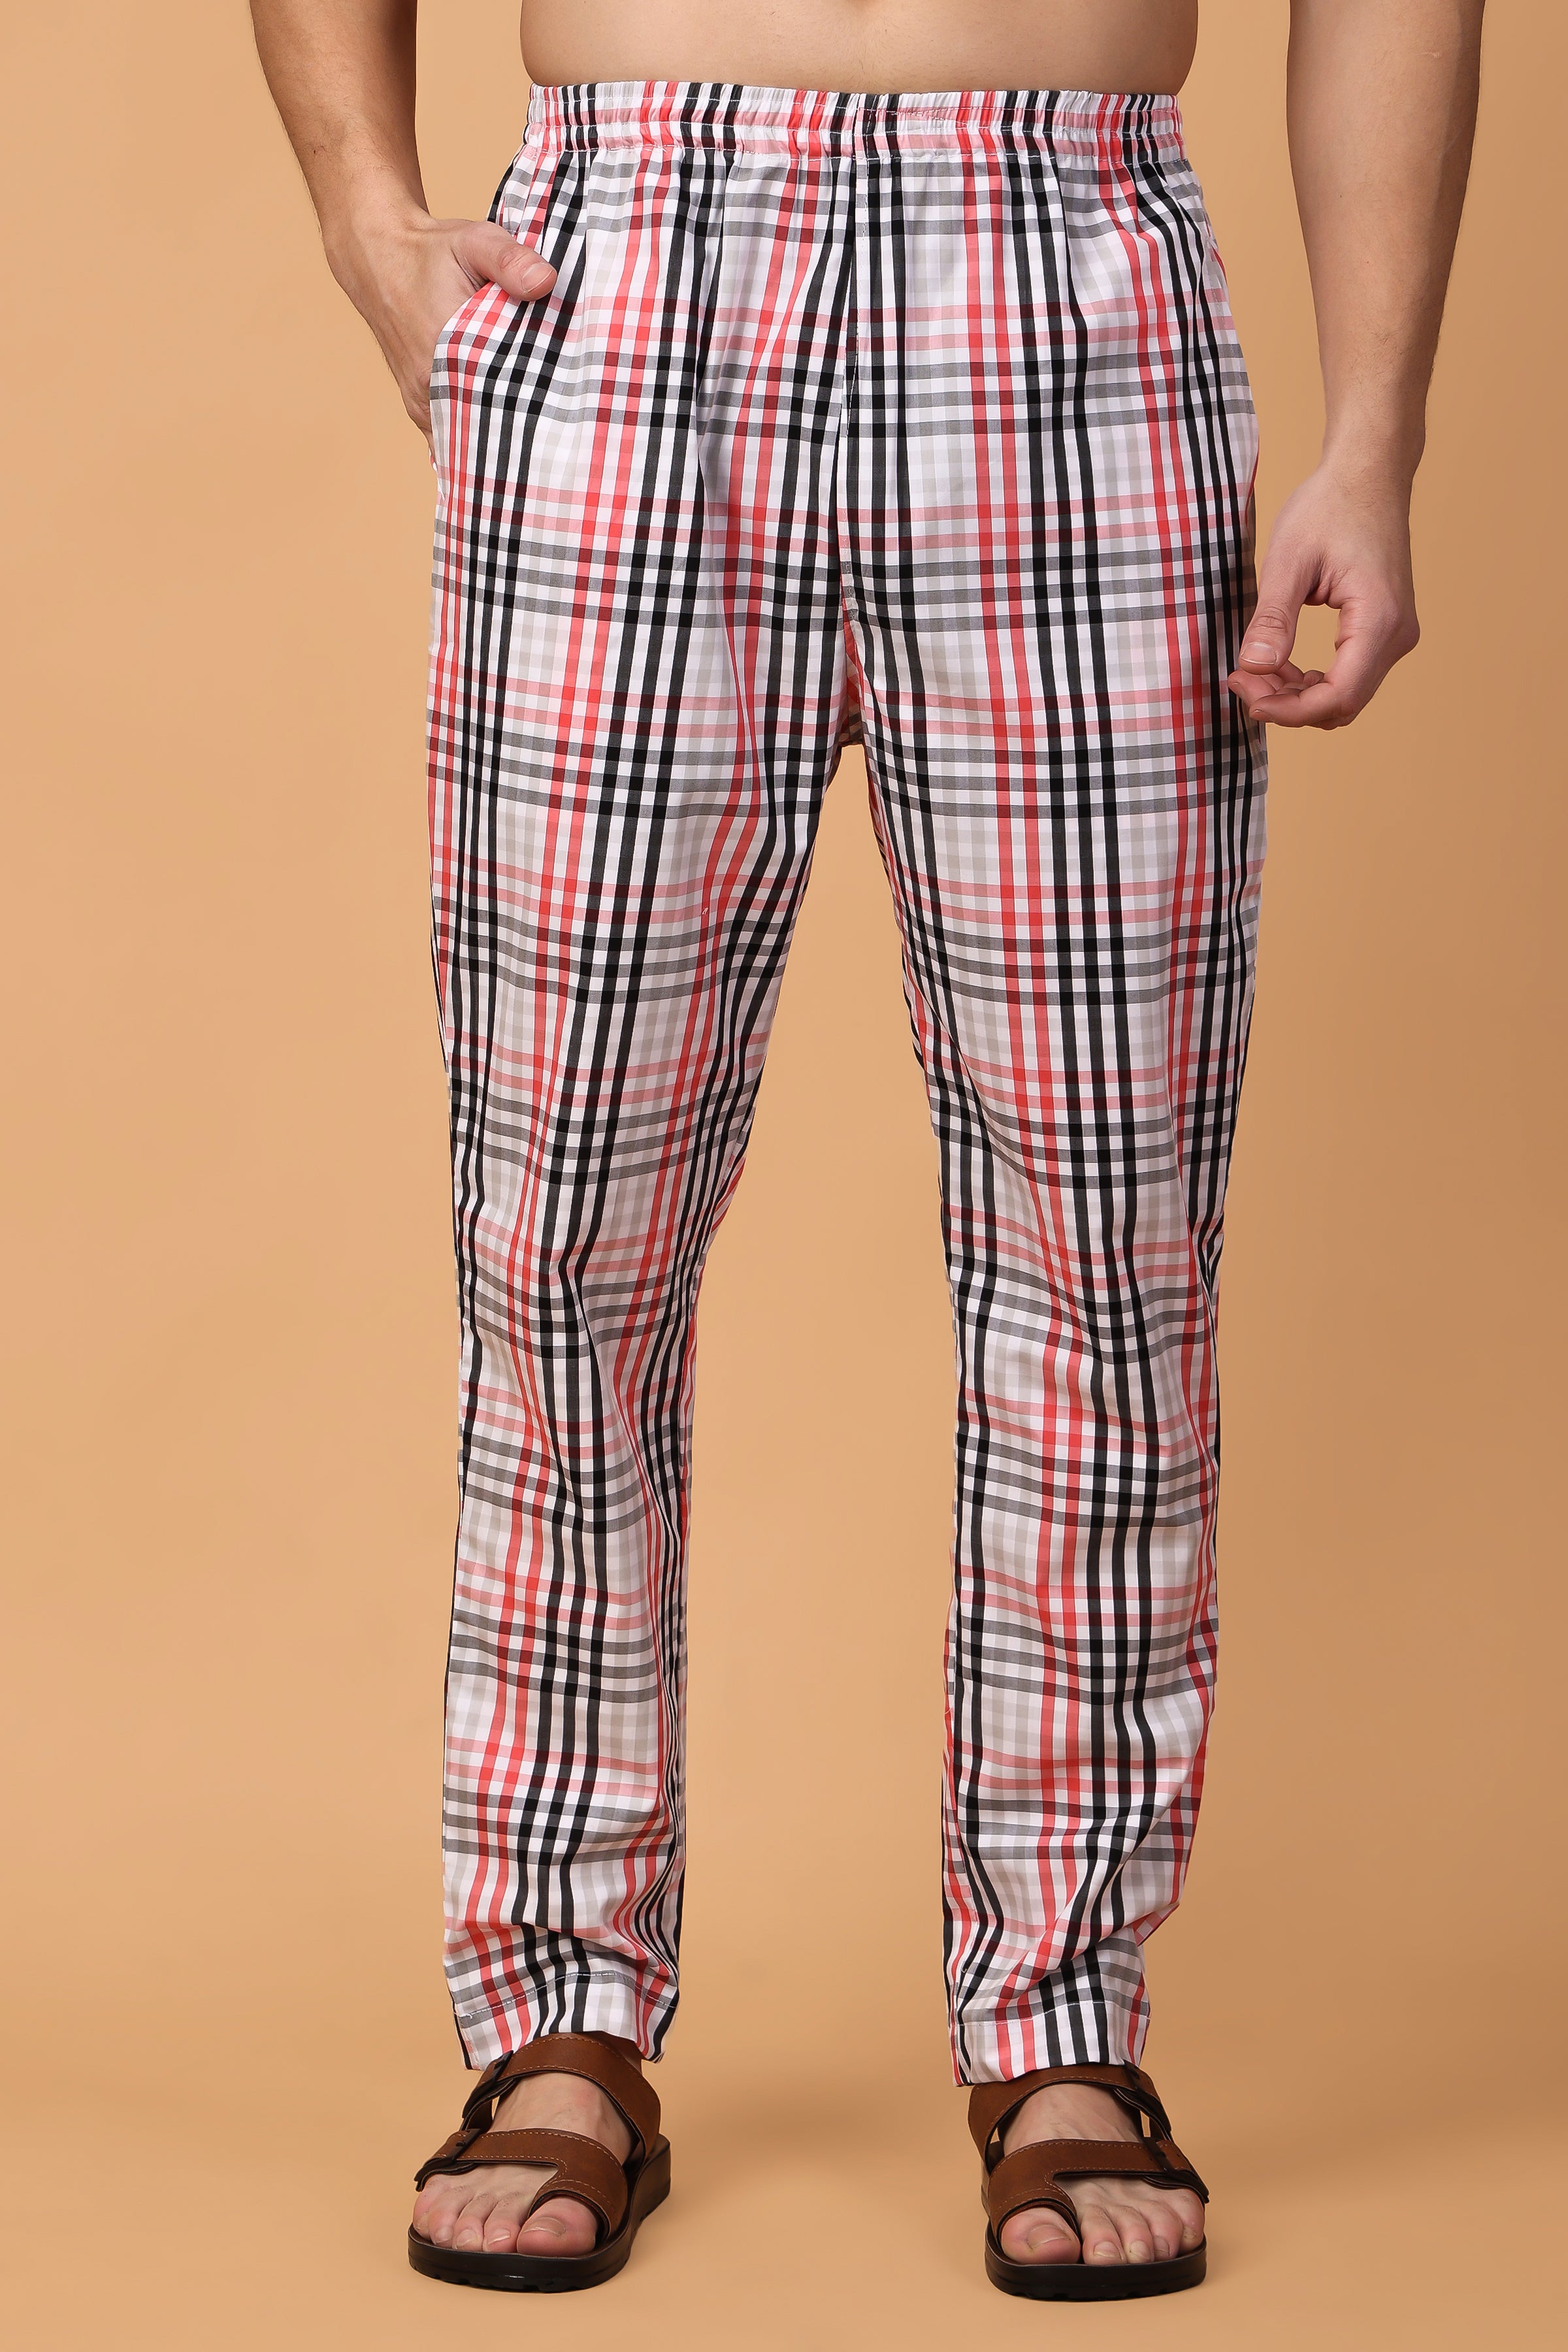 Mens Pyjamas - Buy Men's Pyjamas Online | Vilan Apparaels – VILAN APPARELS